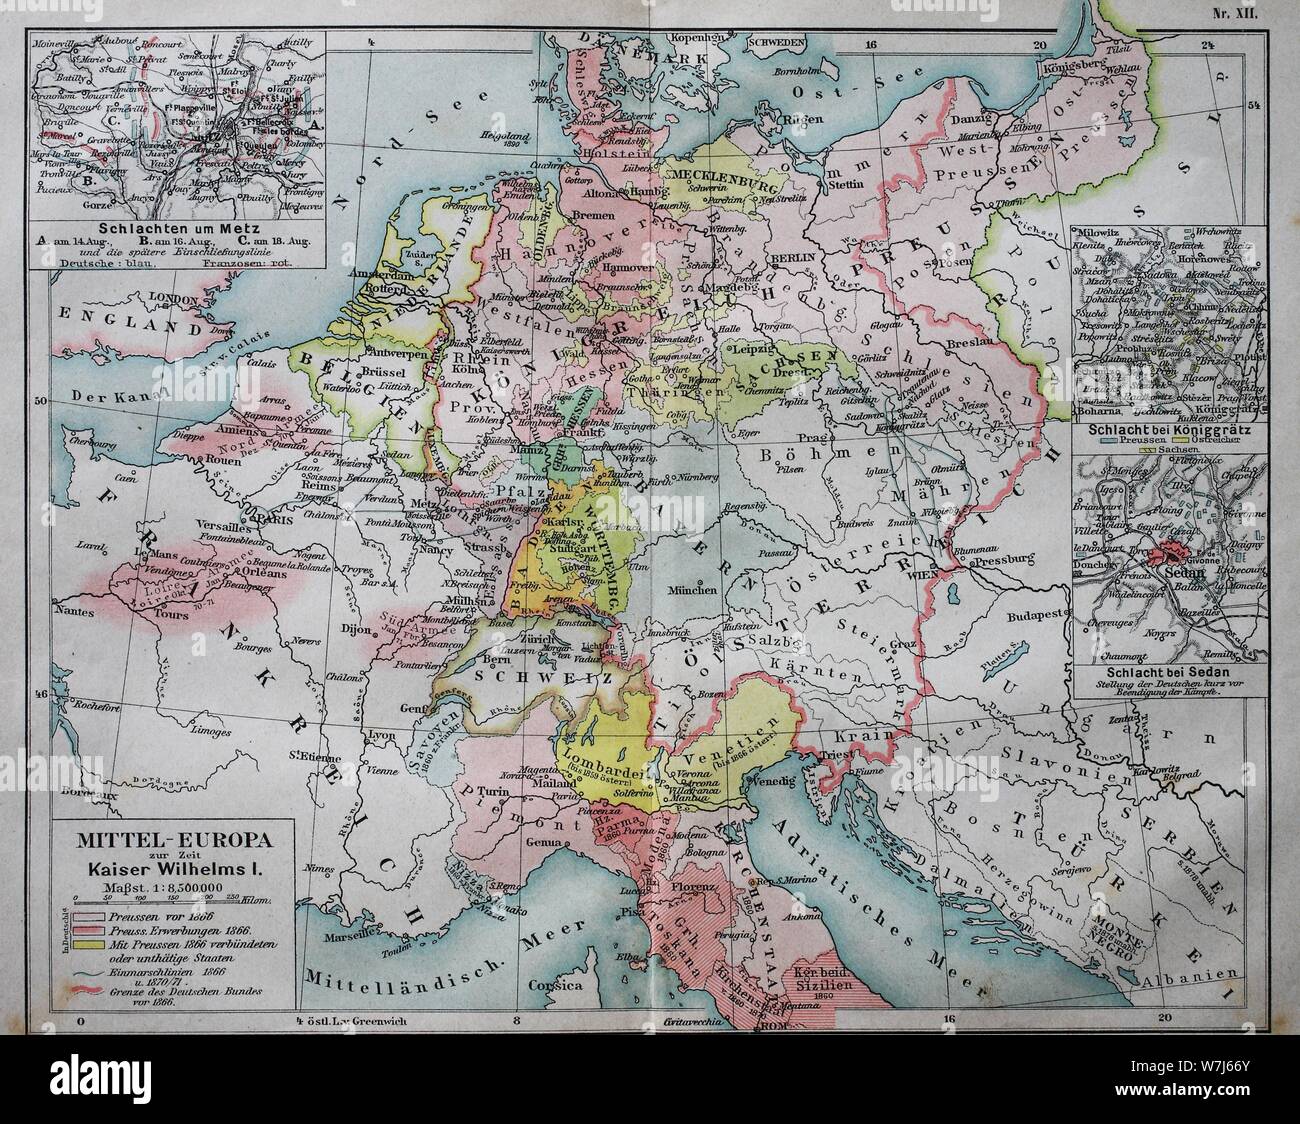 Carte d'Europe centrale à l'époque de l'empereur Guillaume I, 1880, illustration historique, Italie Banque D'Images